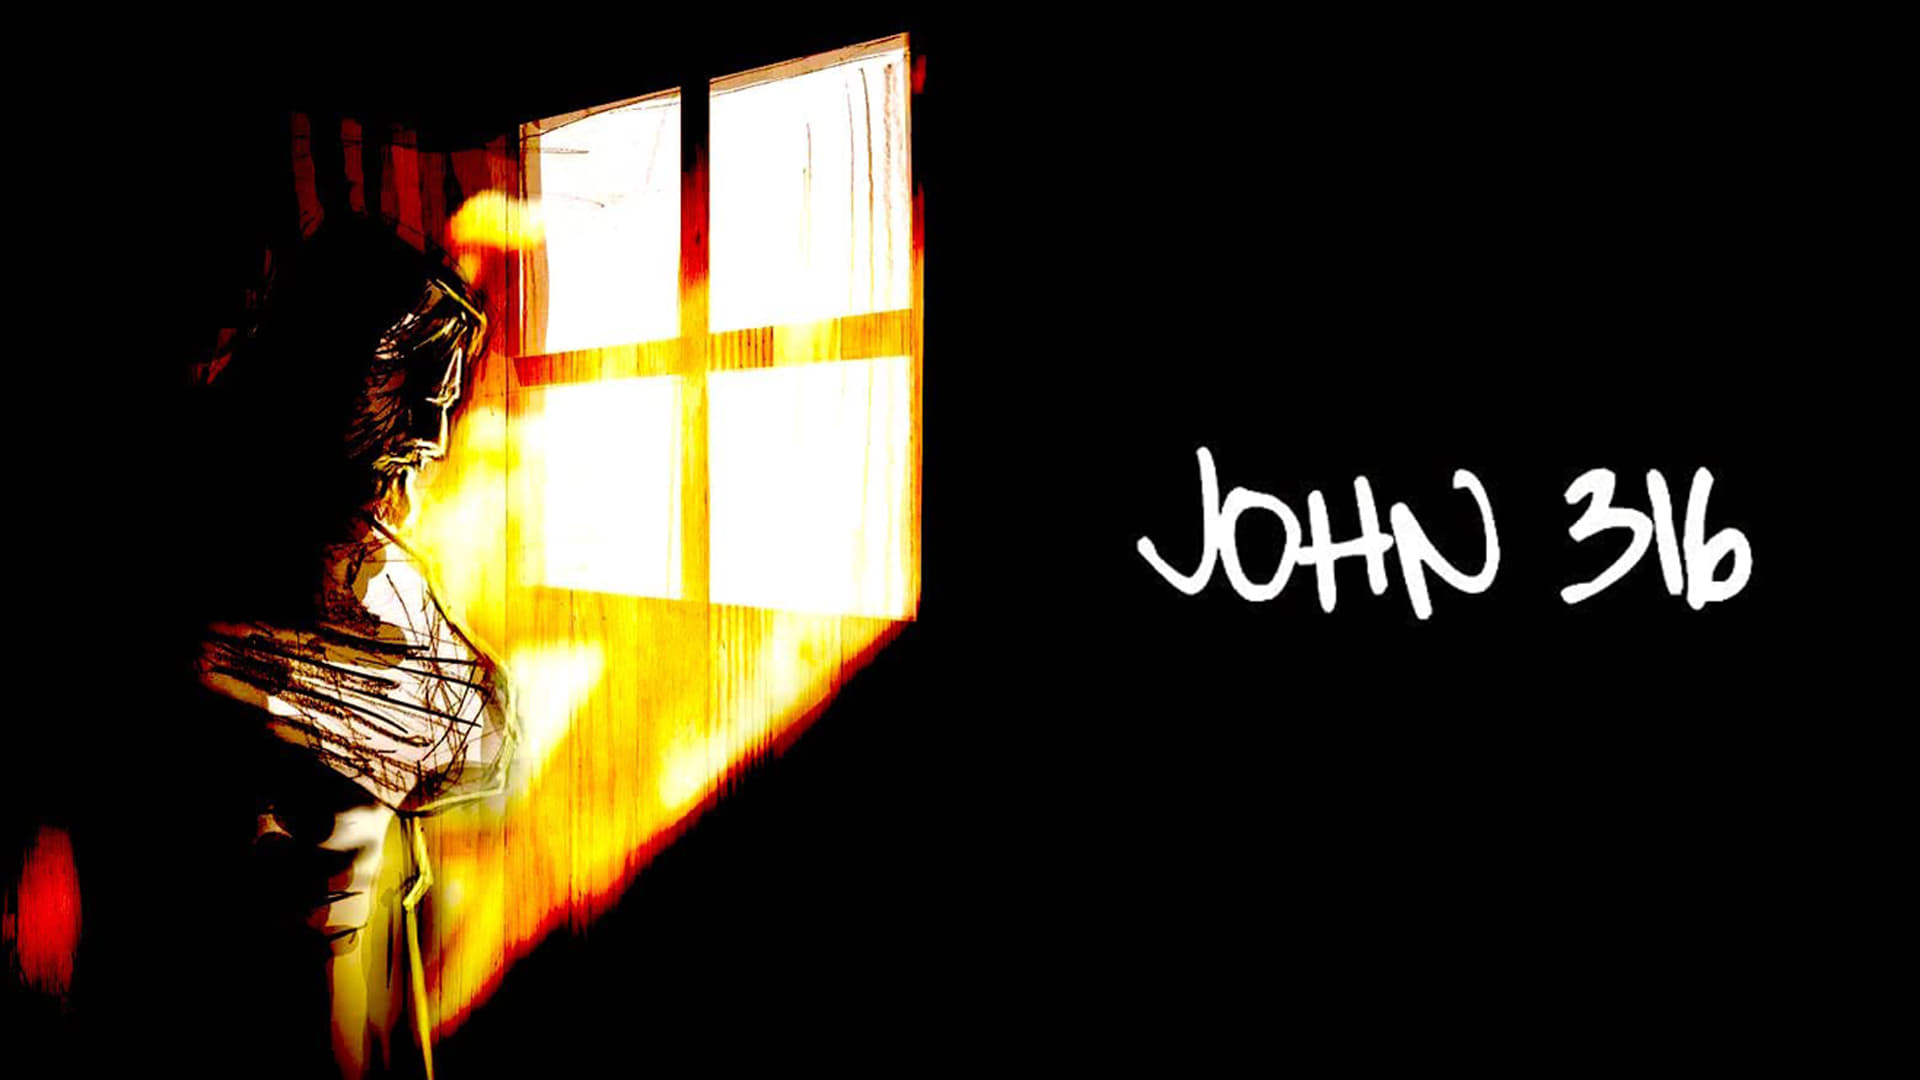 John, 316